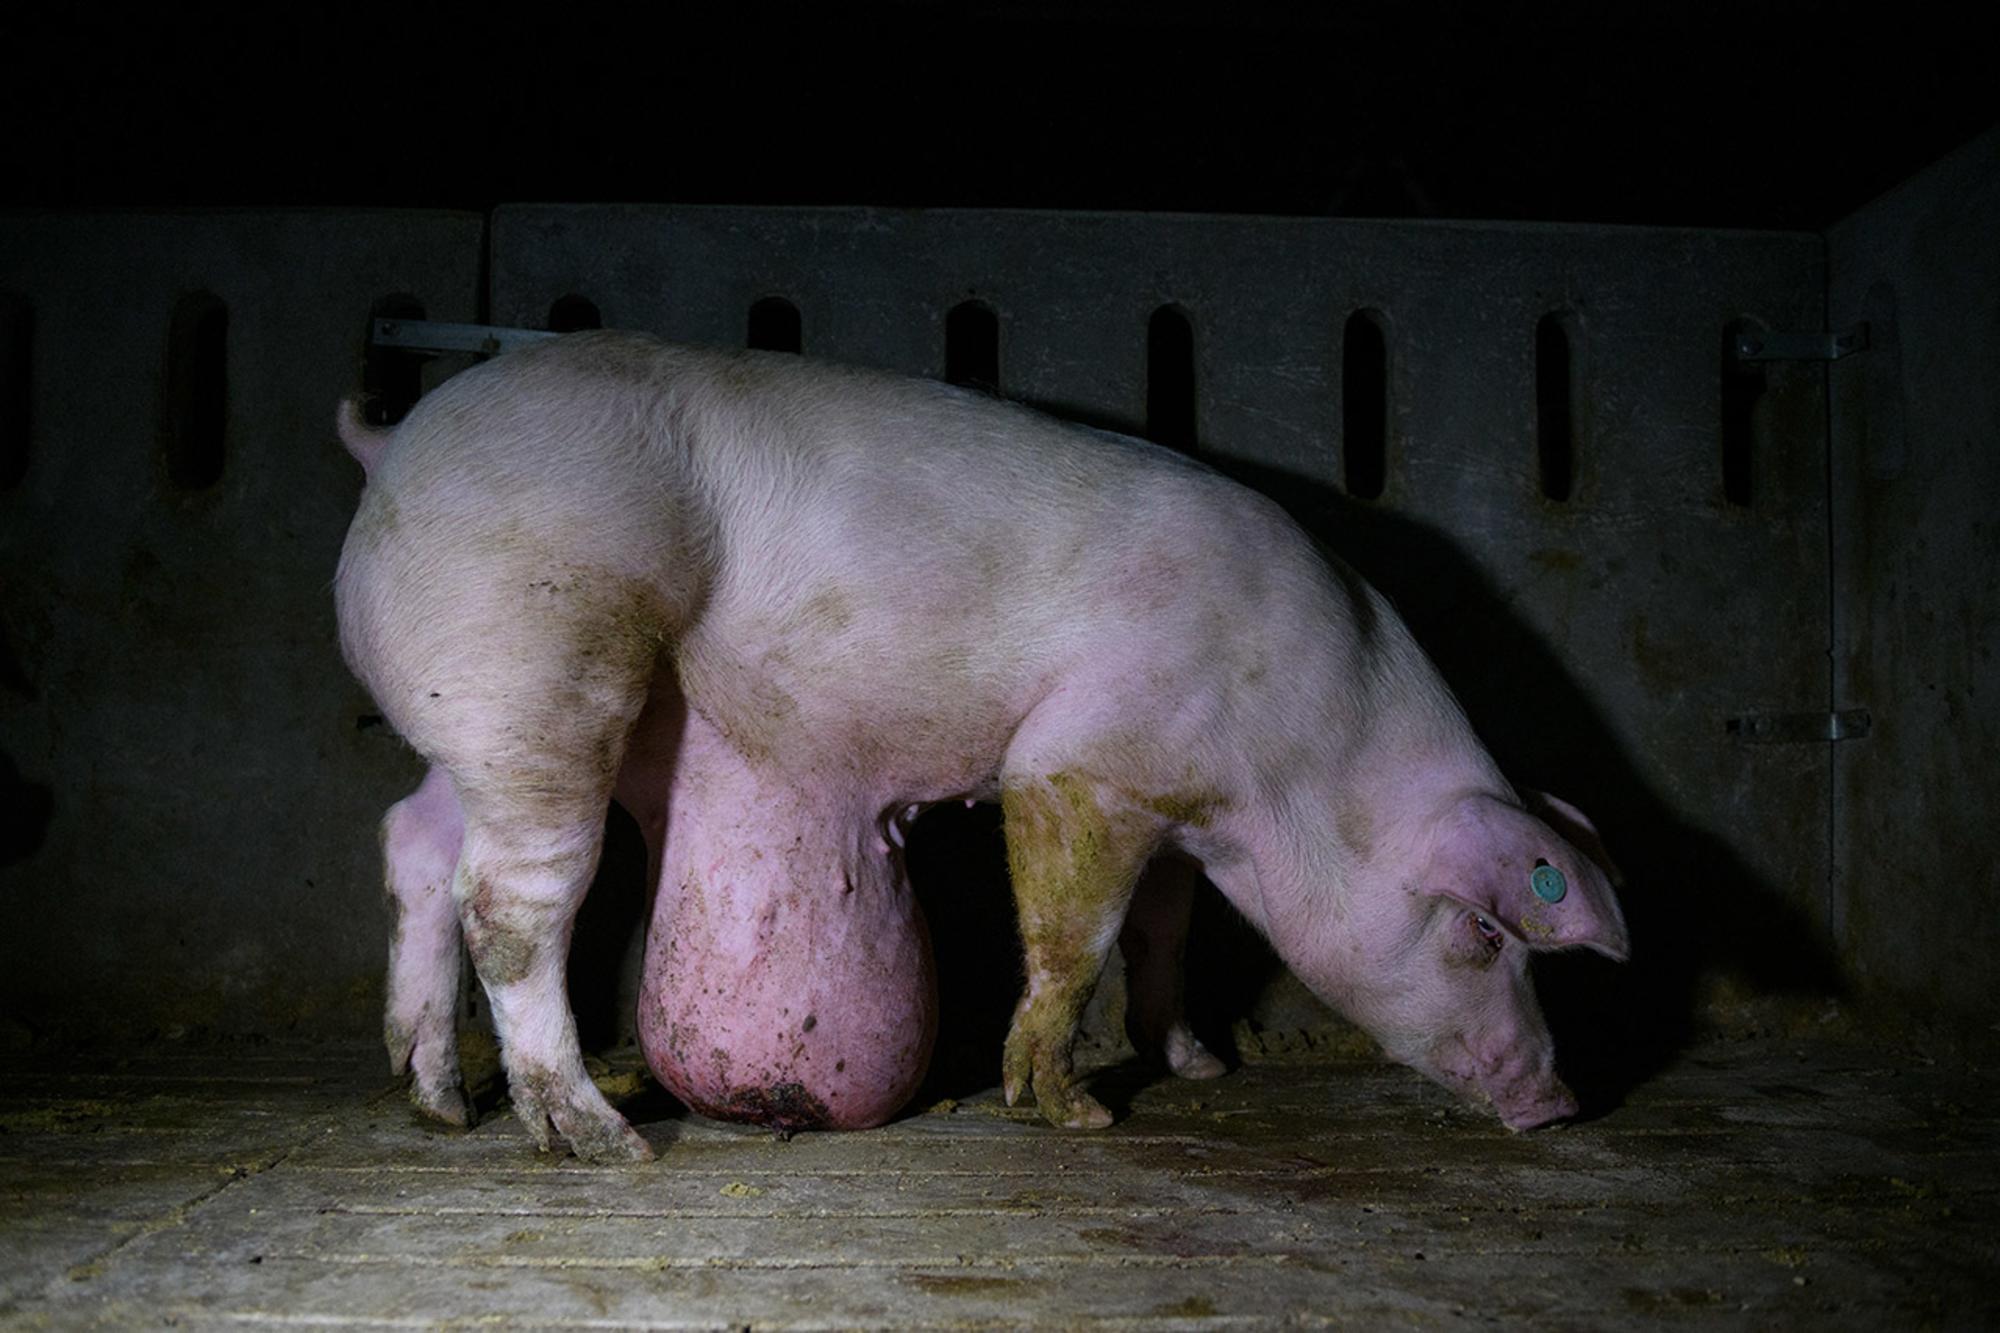 Ver el sufrimiento animal en granjas de cerdos 2